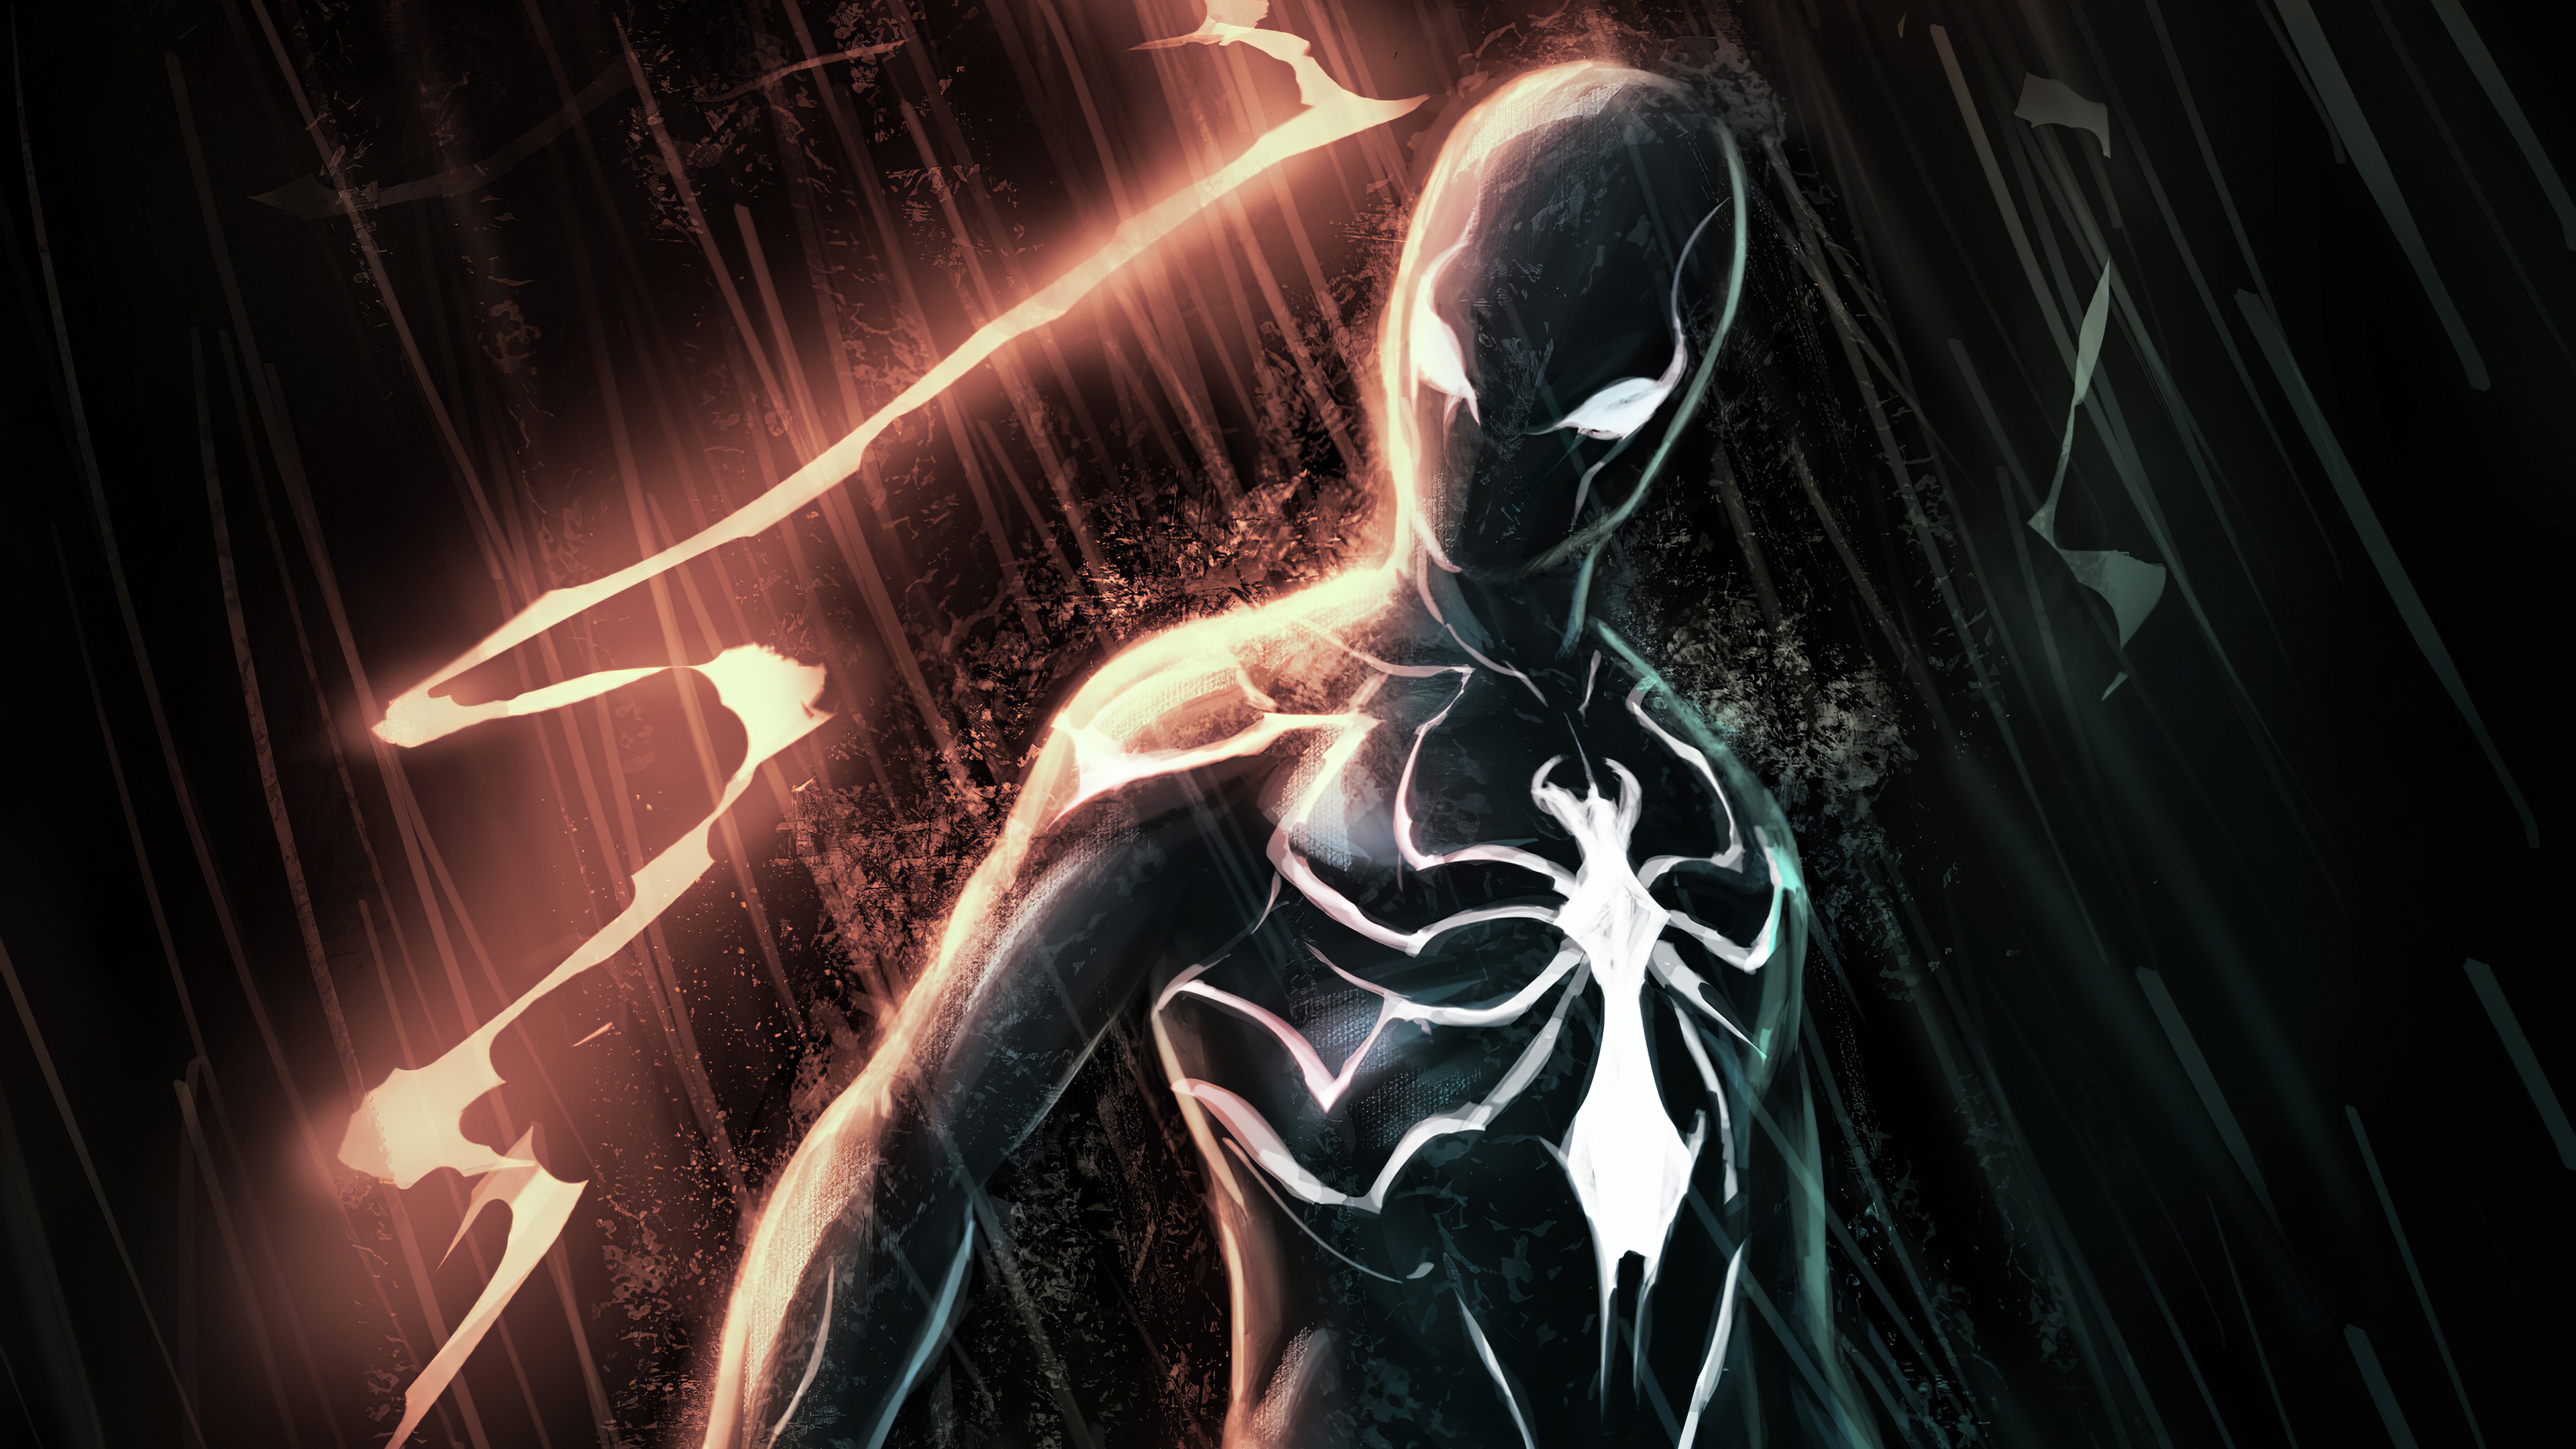 Bạn đã thử bao giờ trang trí thiết bị của mình bằng hình nền Black Spiderman chưa? Với sự đen trắng bí ẩn kết hợp cùng gam màu đỏ nổi bật, chắc hẳn bạn sẽ có một trải nghiệm hoàn toàn mới lạ và hấp dẫn.